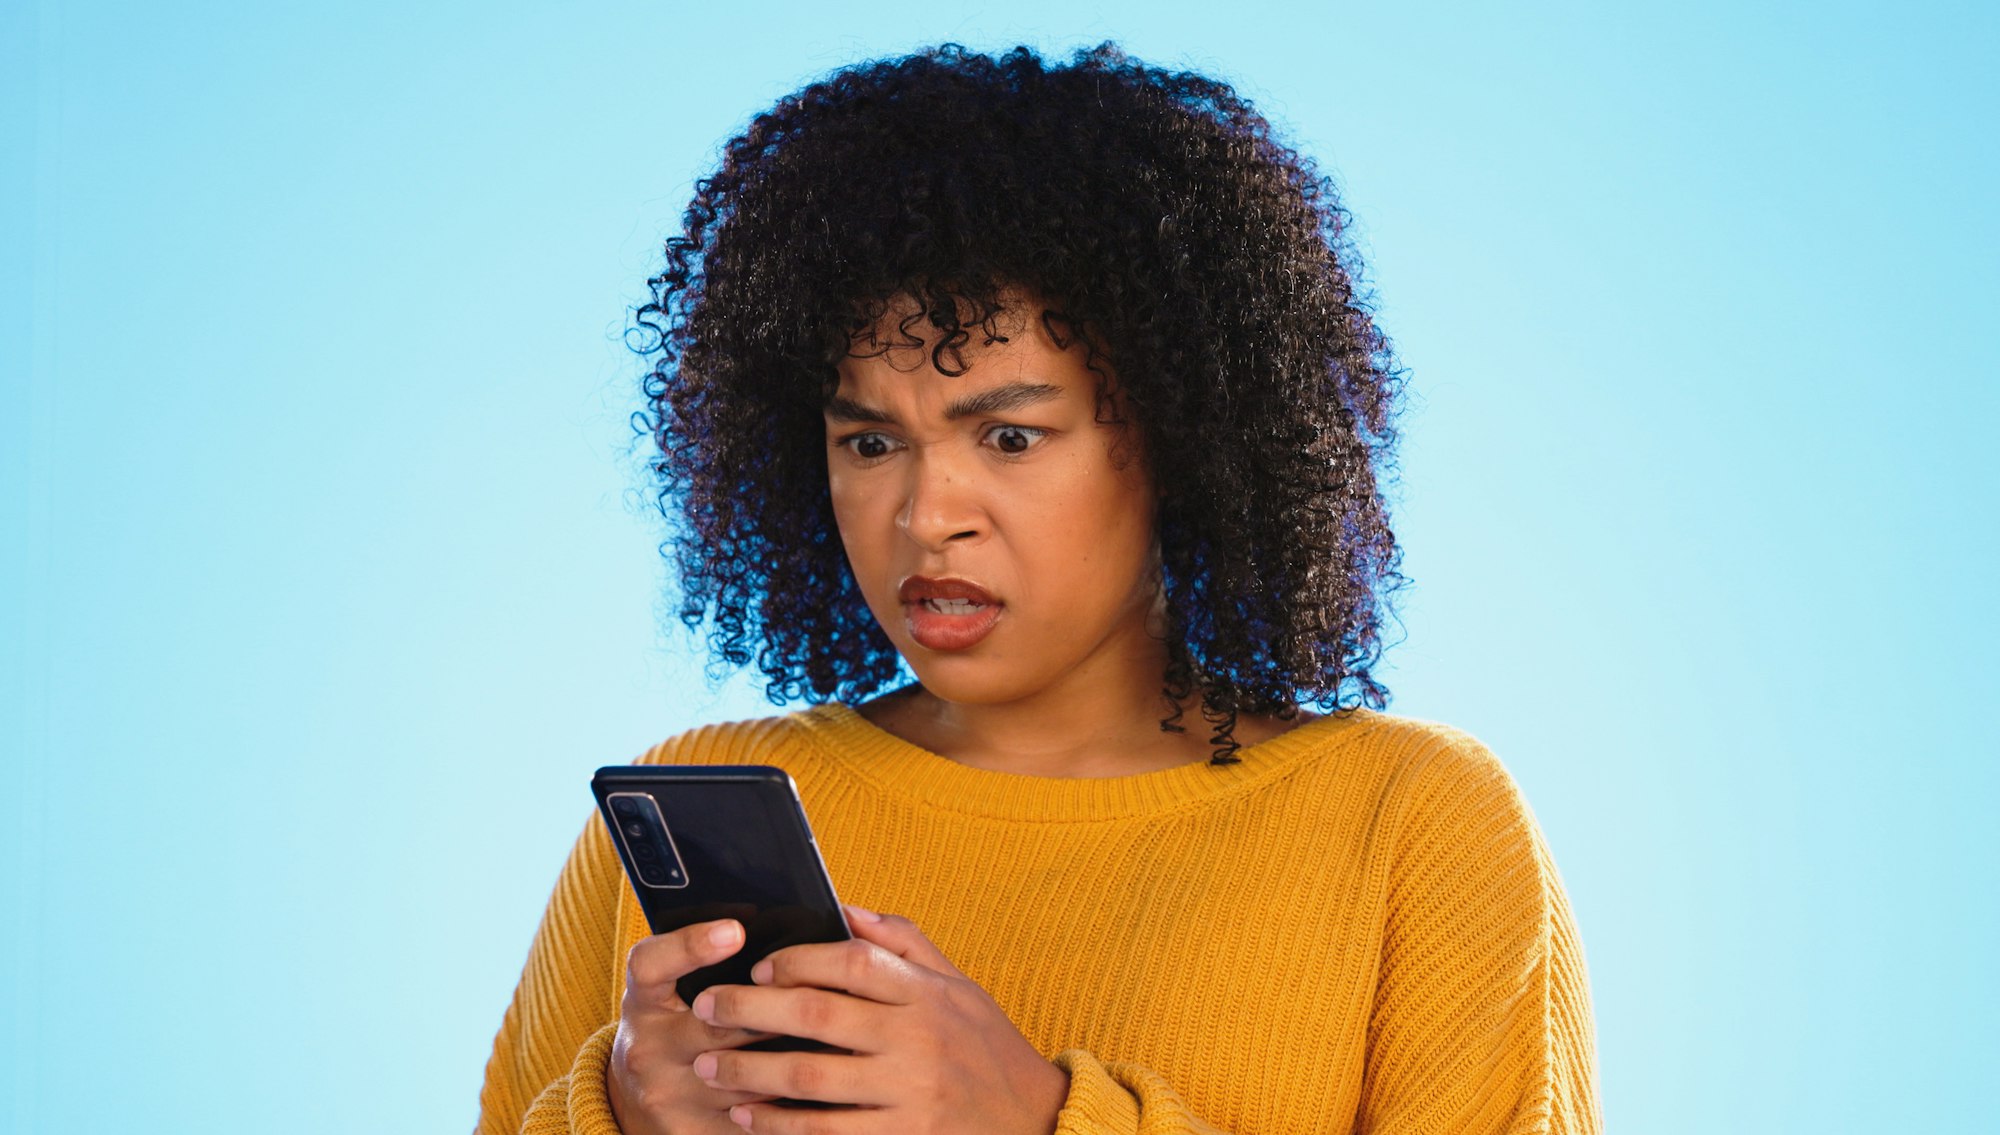 Savez-vous comment les escrocs utilisent les "scama" pour arnaquer via SMS ?